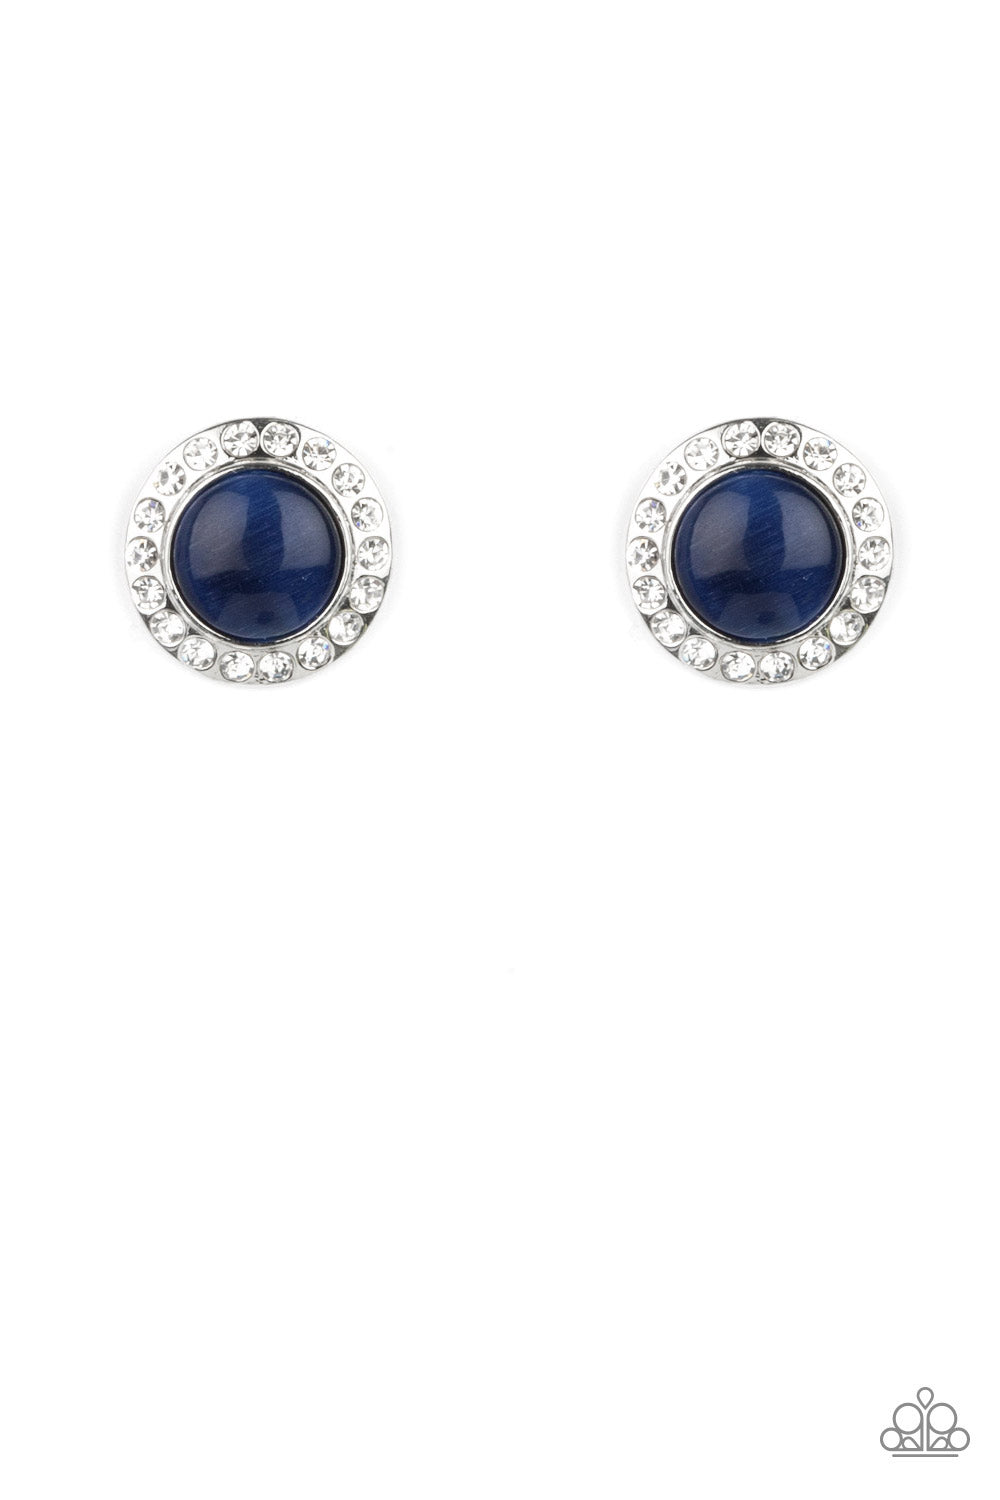 Glowing Dazzle - Blue earrings